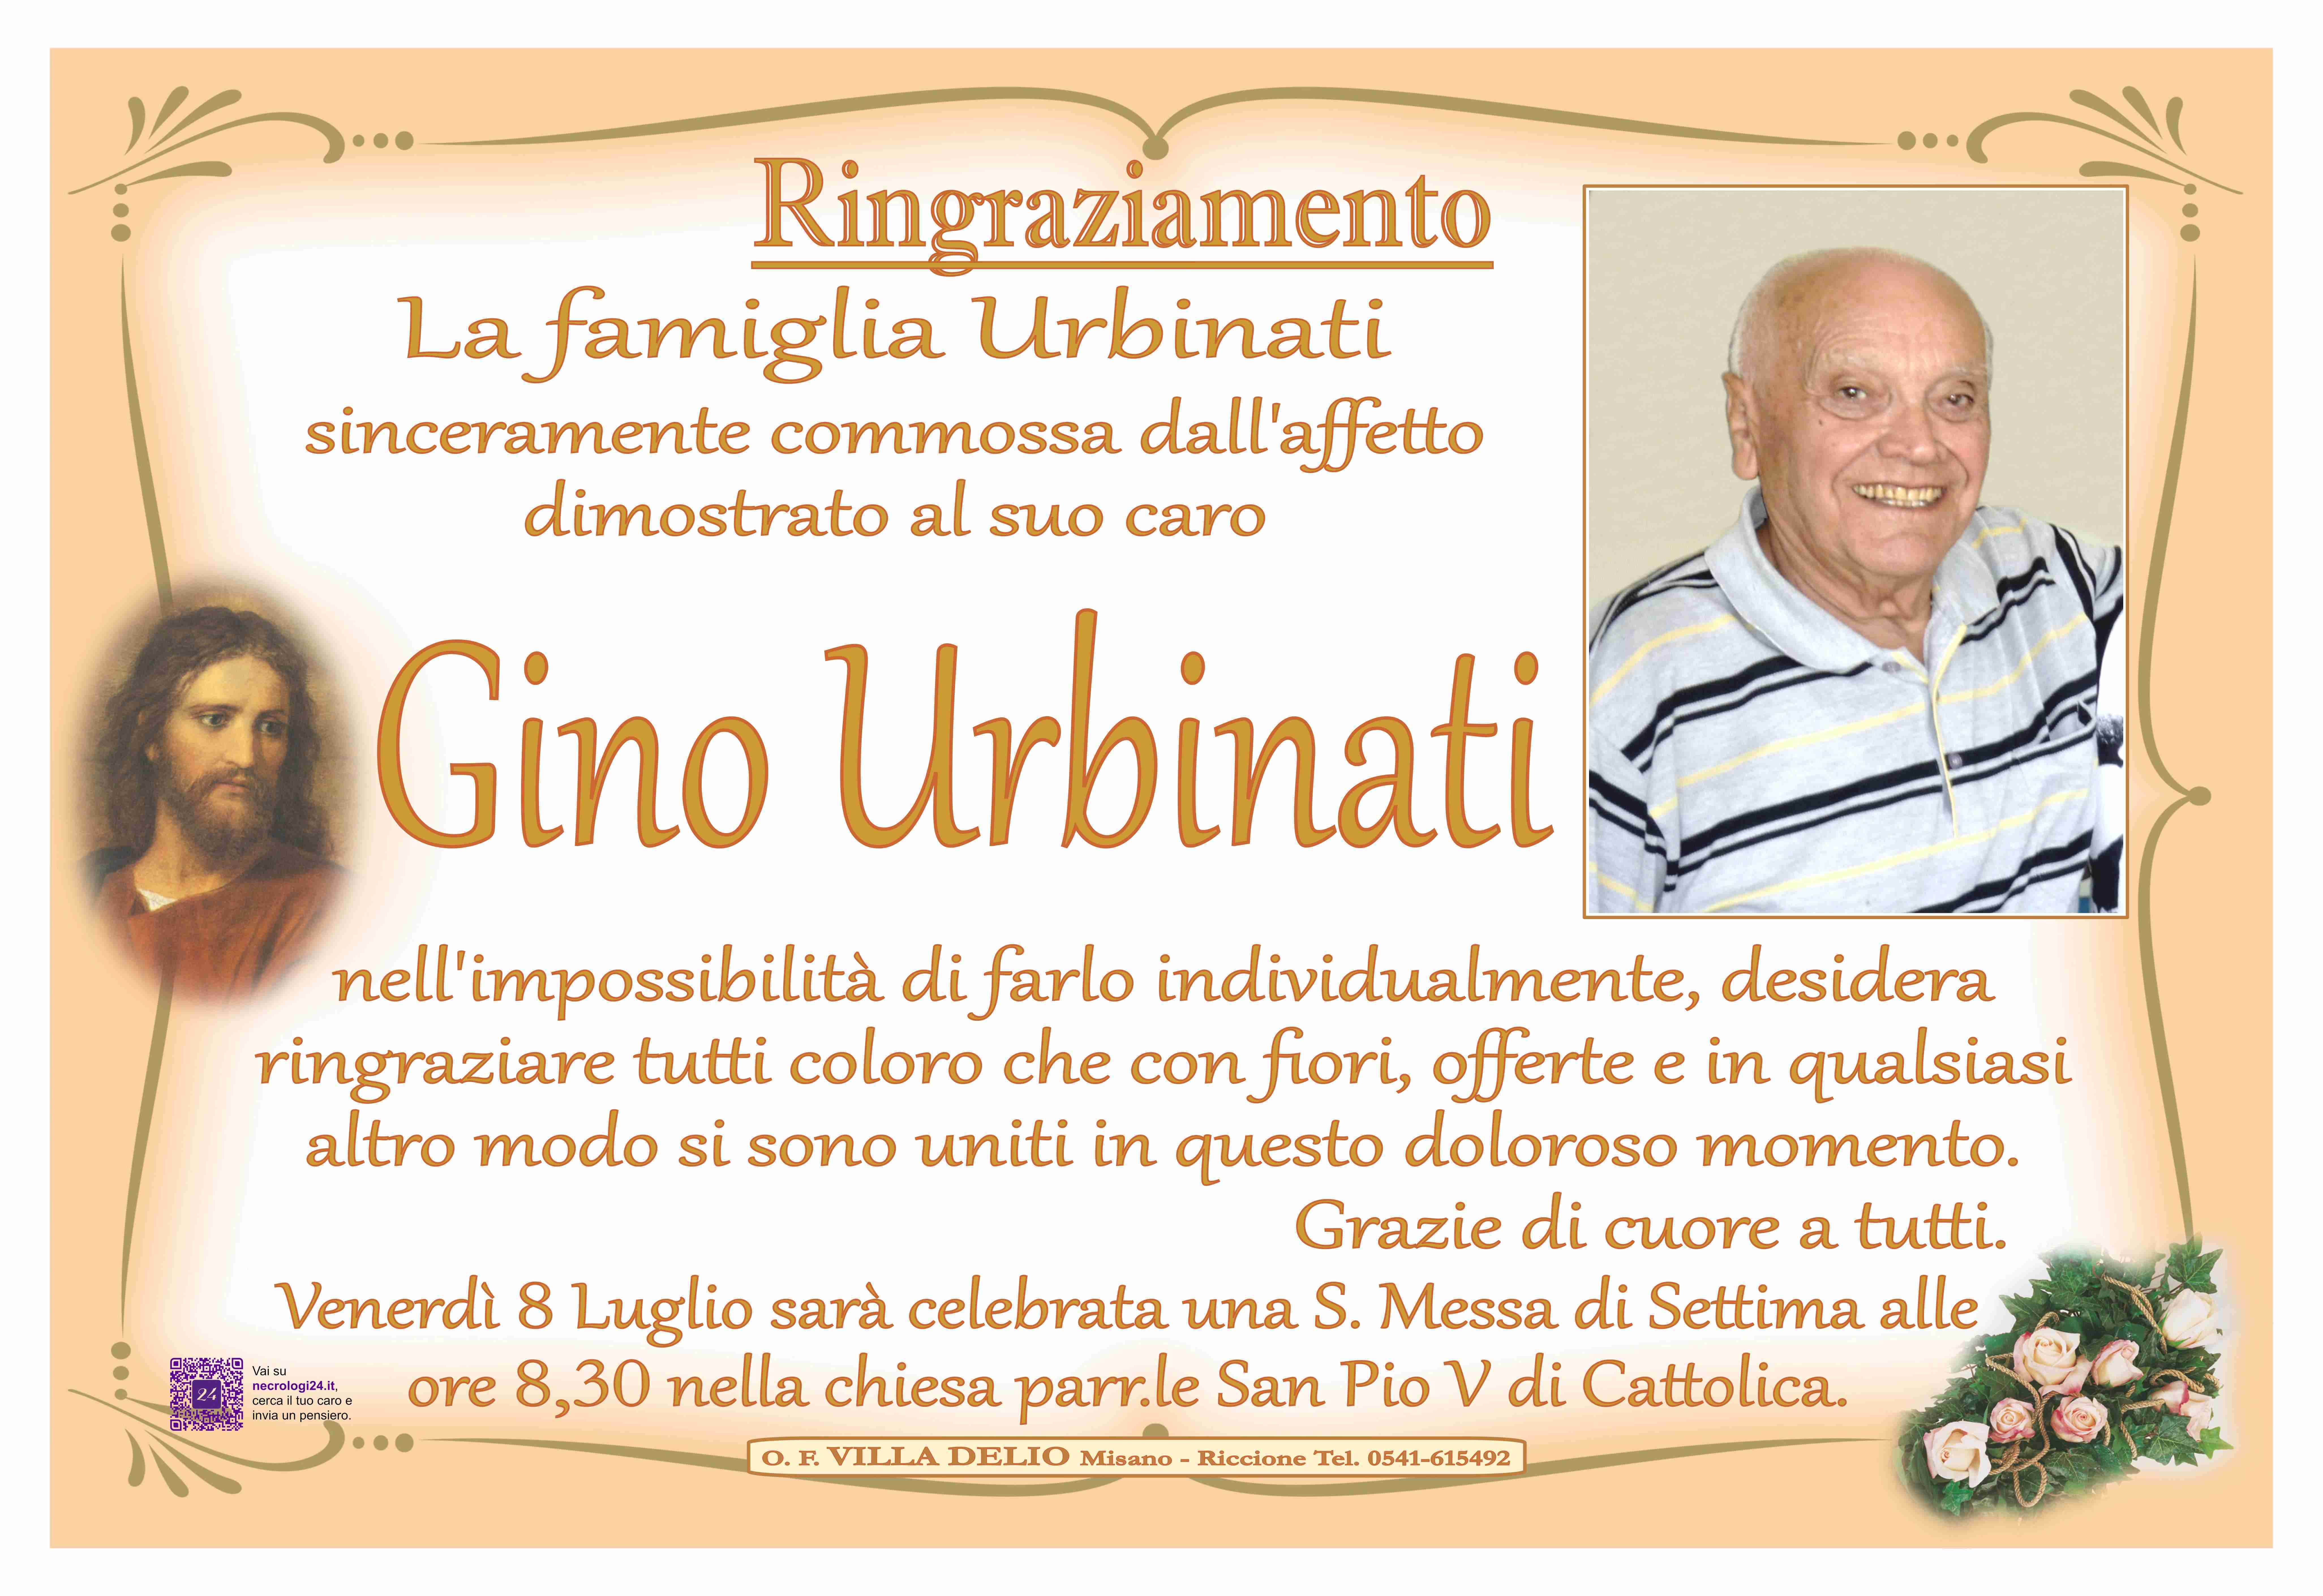 Gino Urbinati